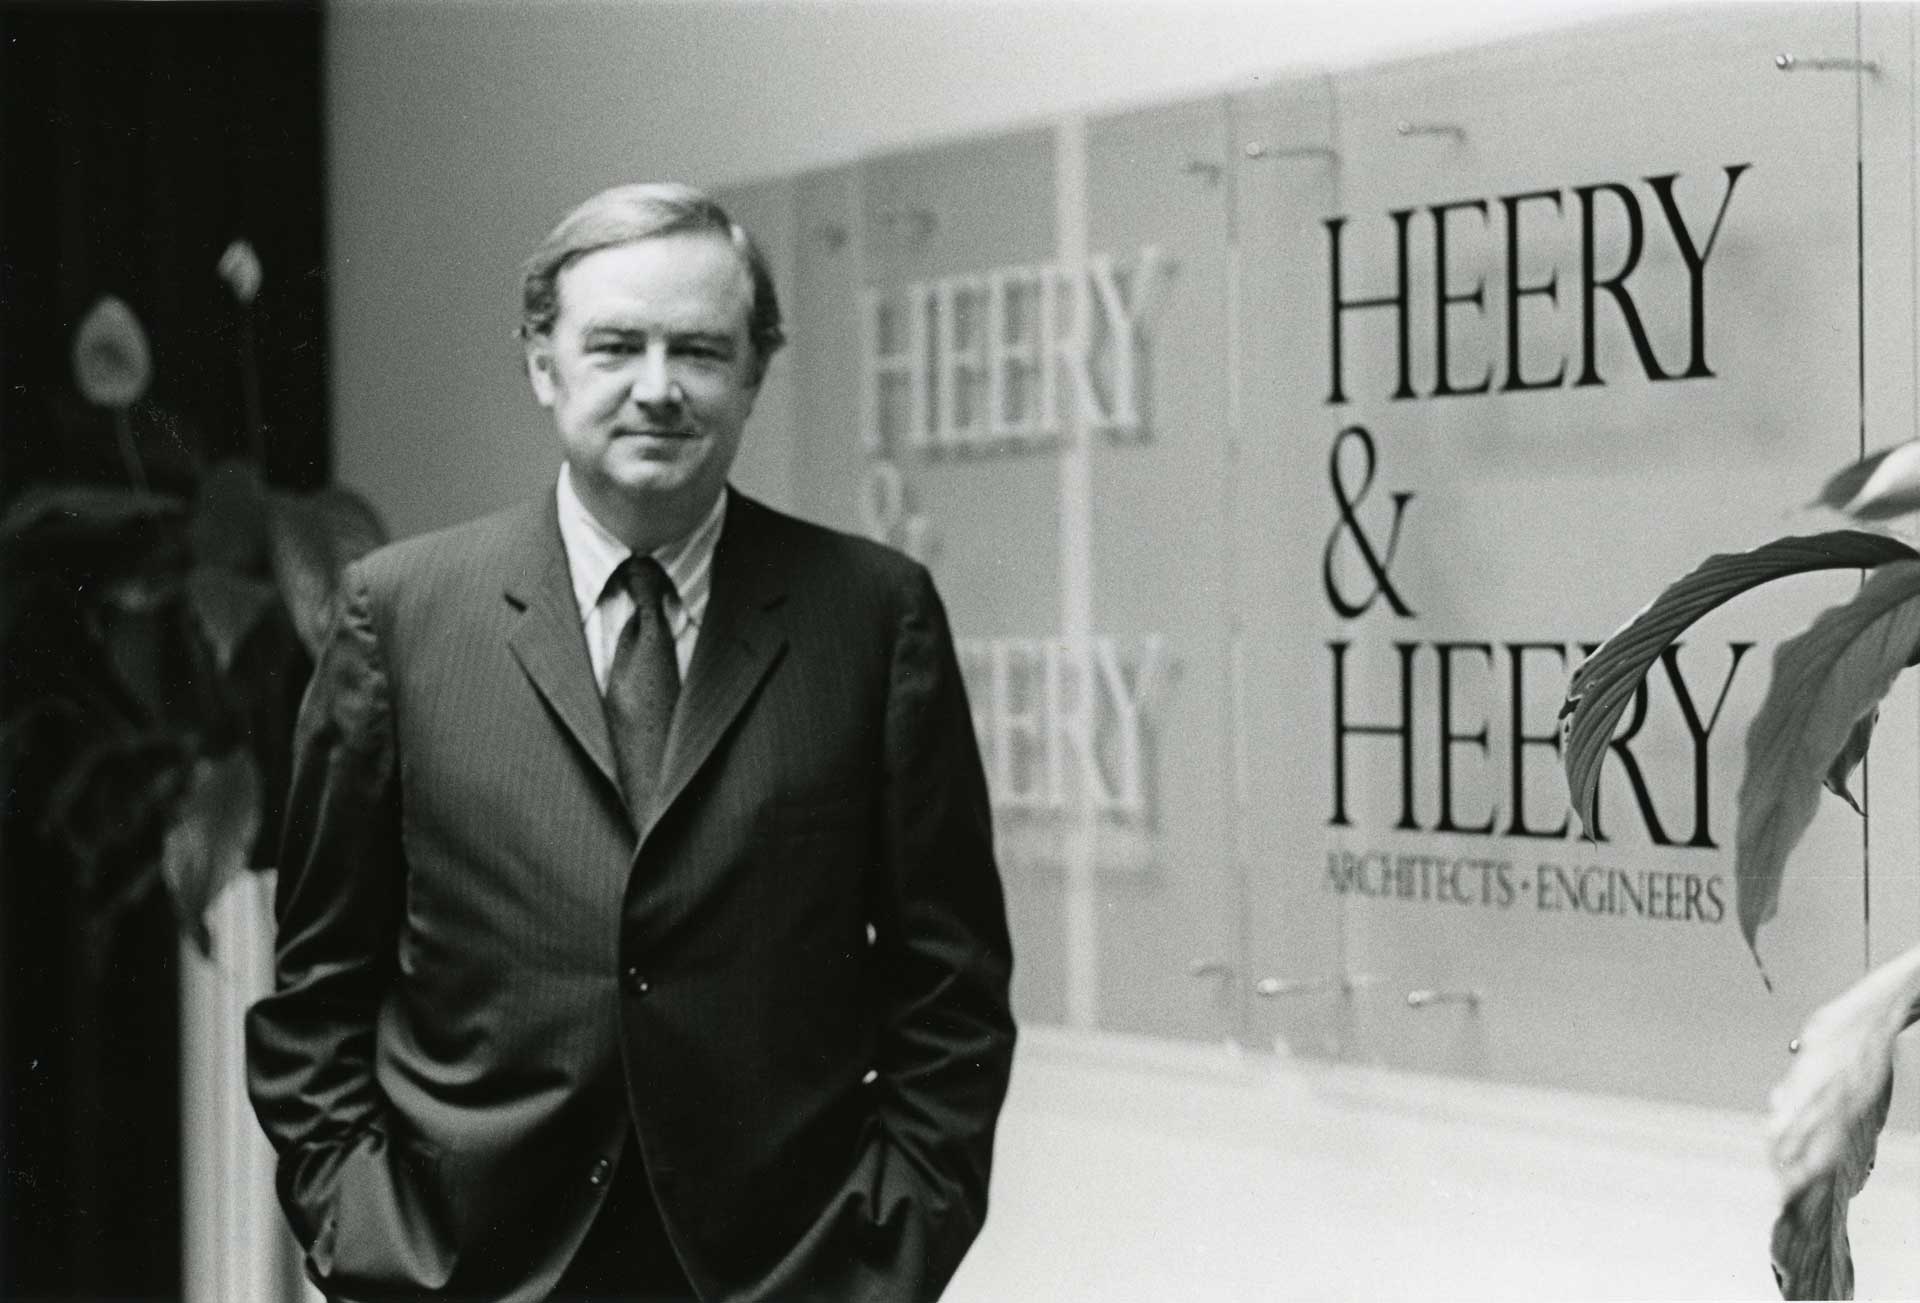 George Heery in front of Heery & Heery sign